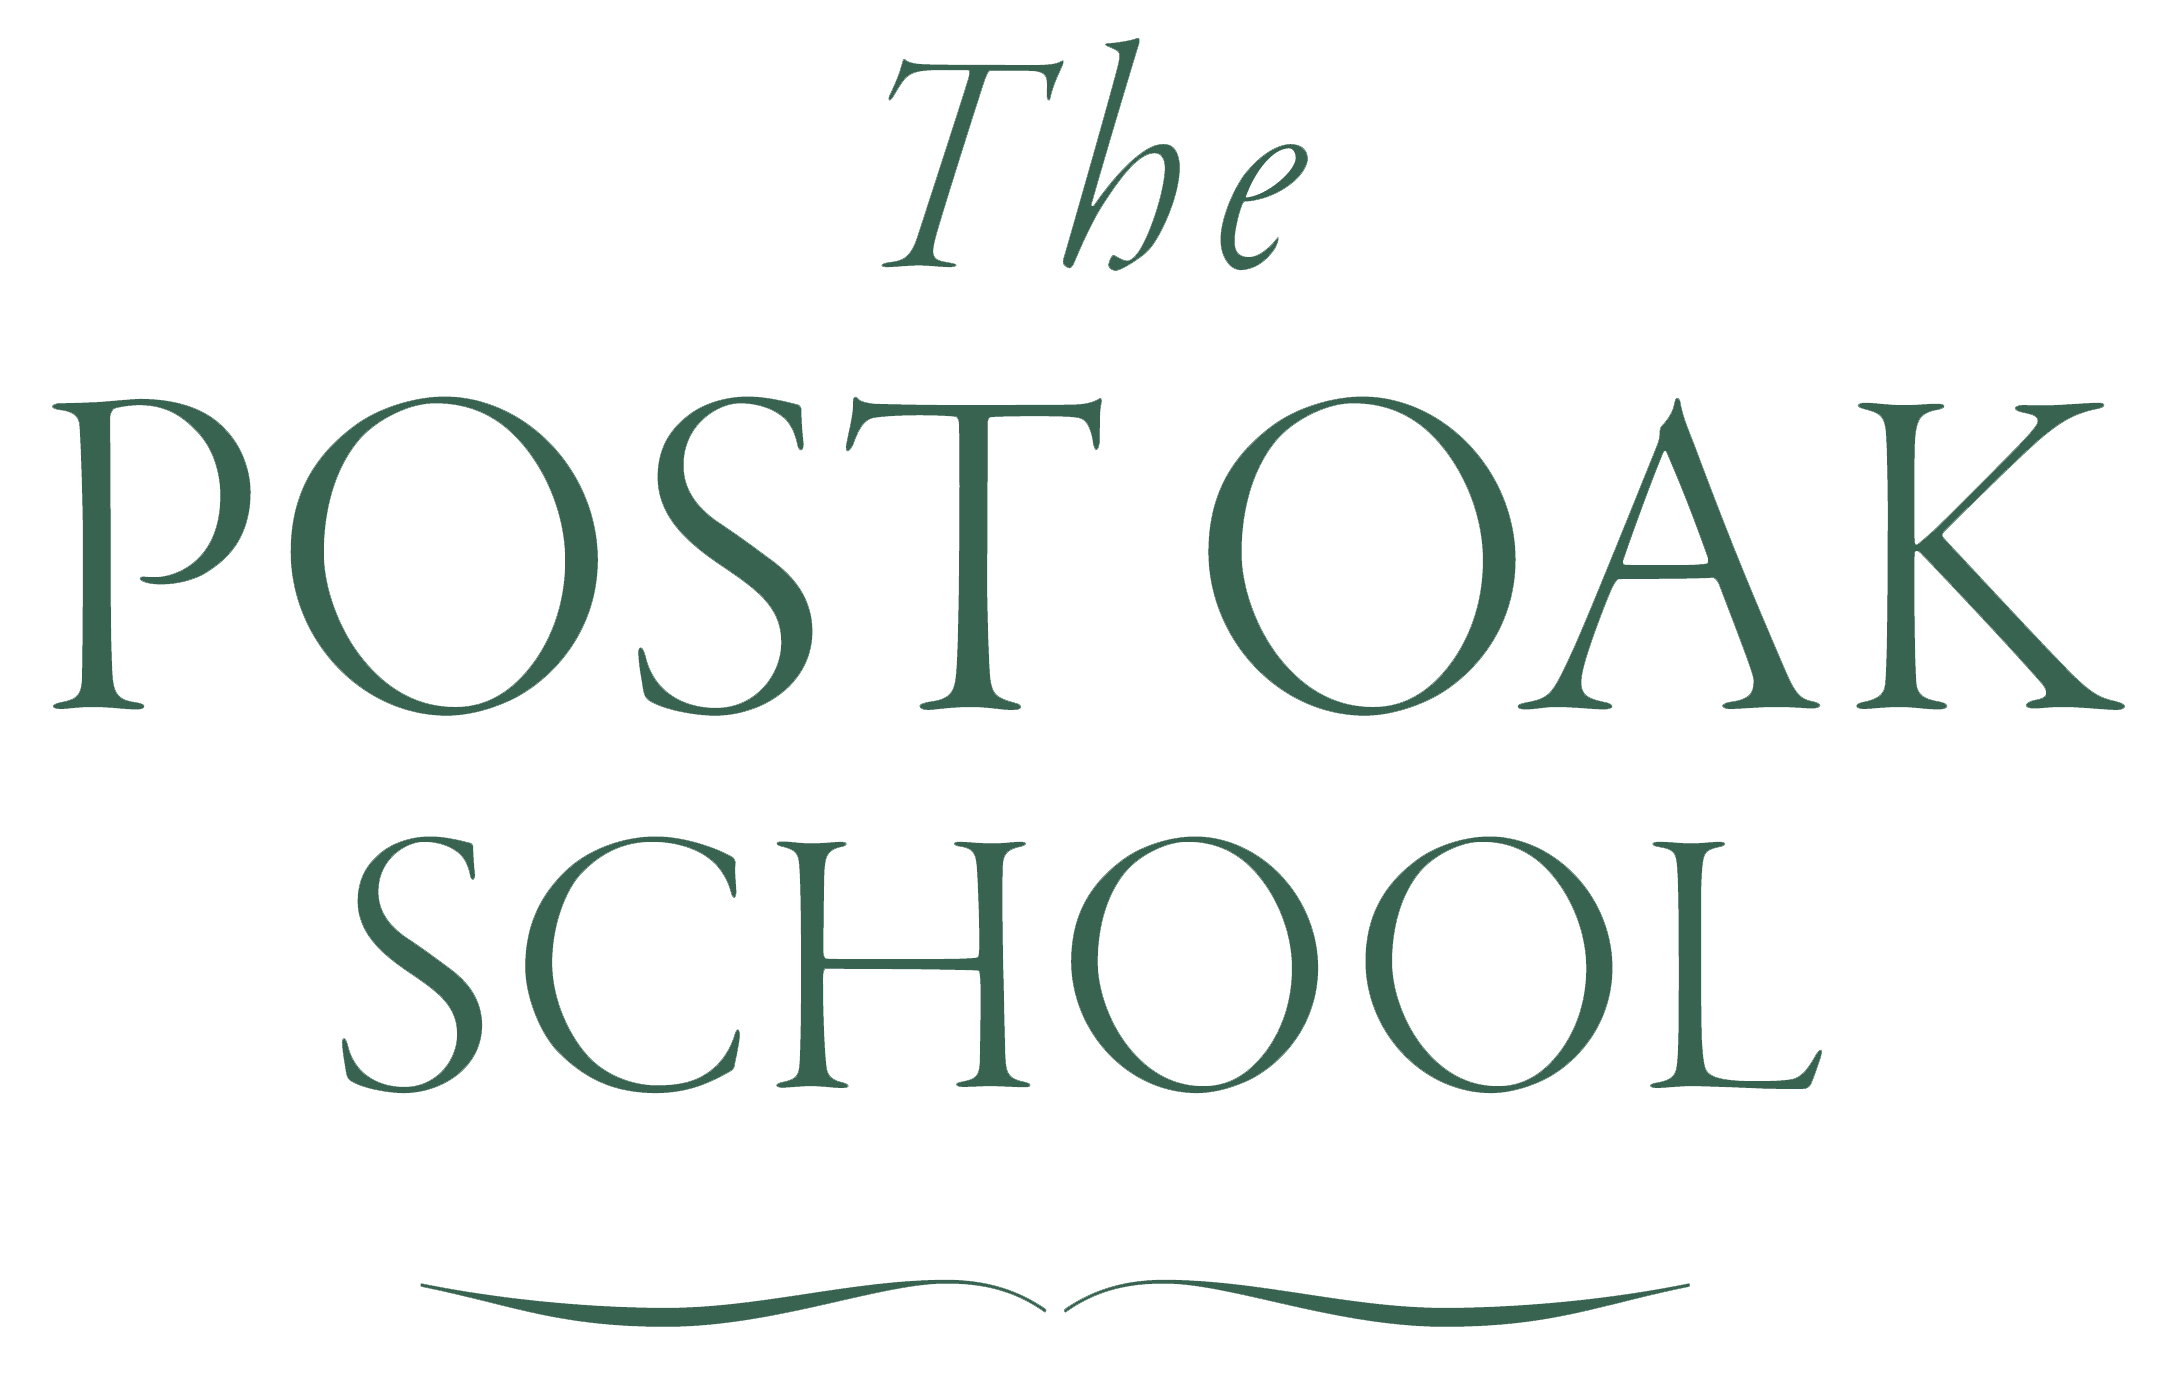 The Post Oak School